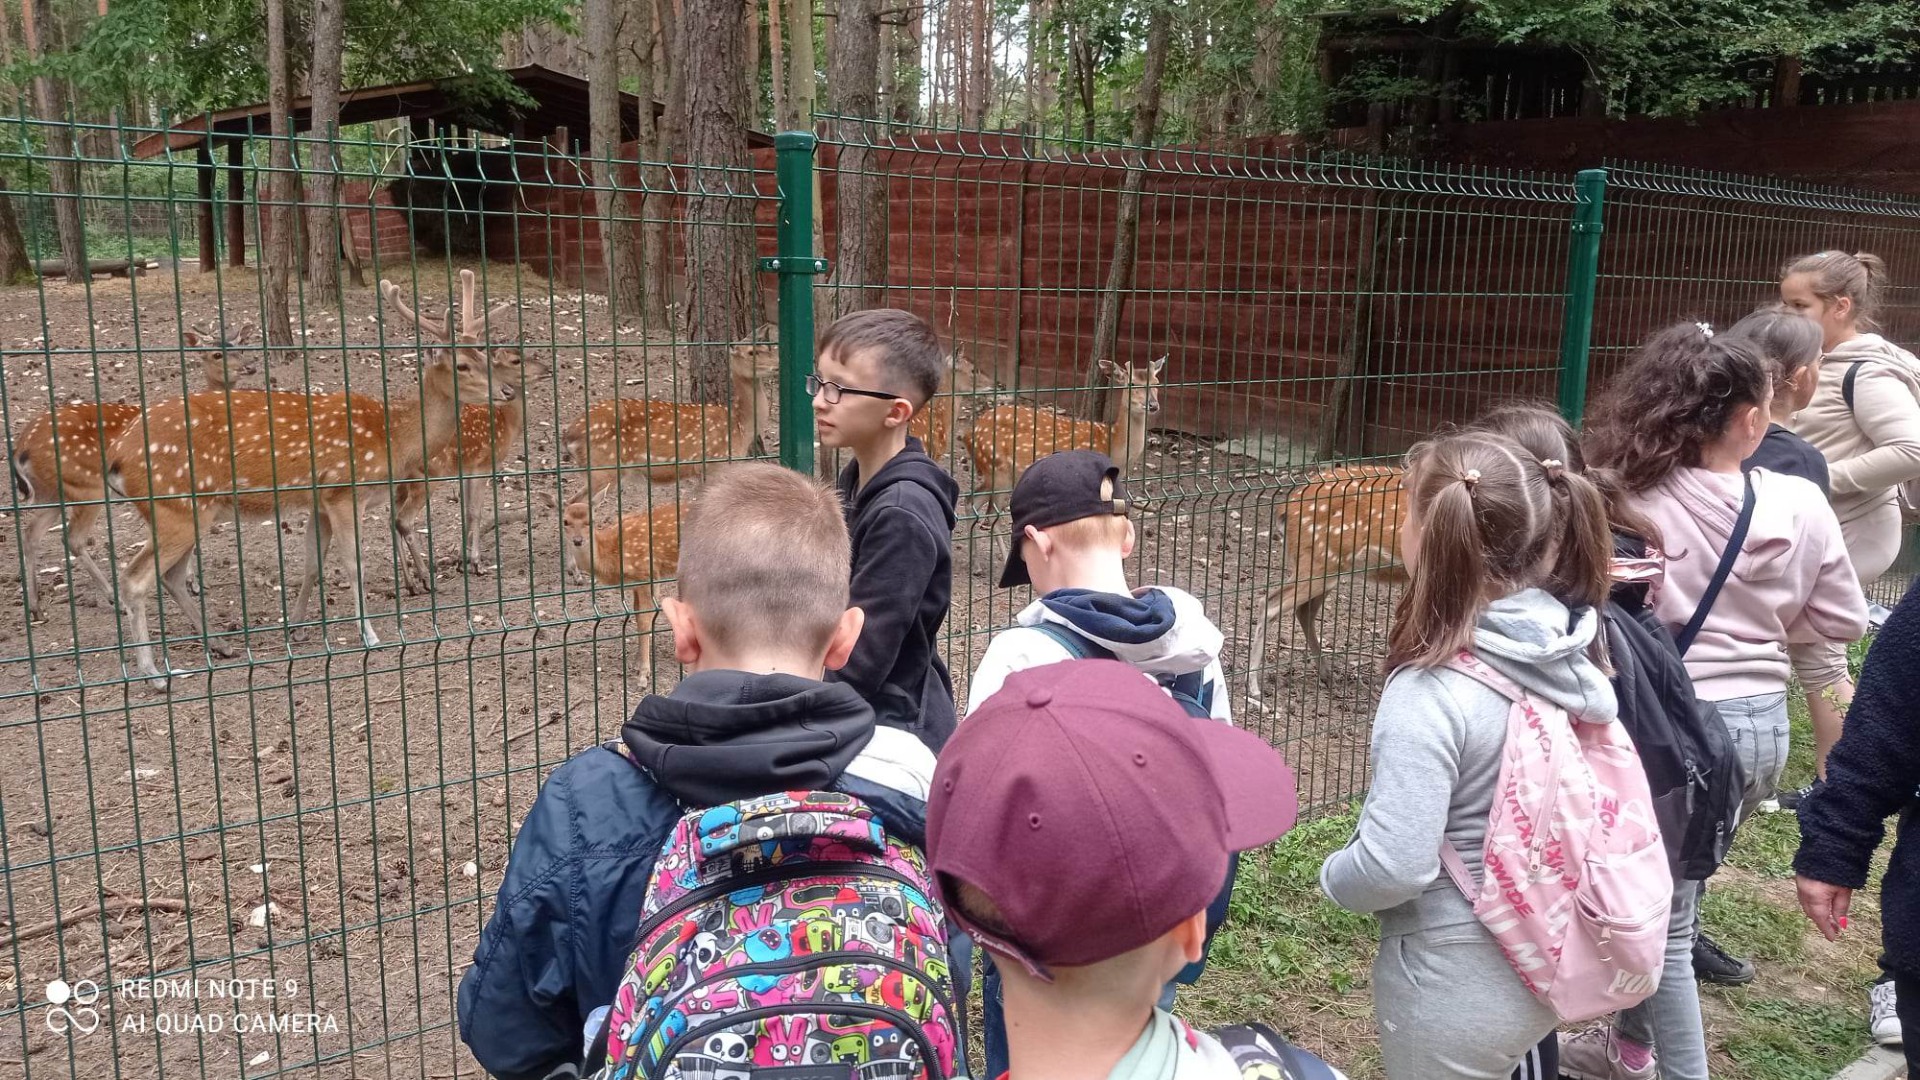 Uczniowie oglądają zwierzęta w mini zoo